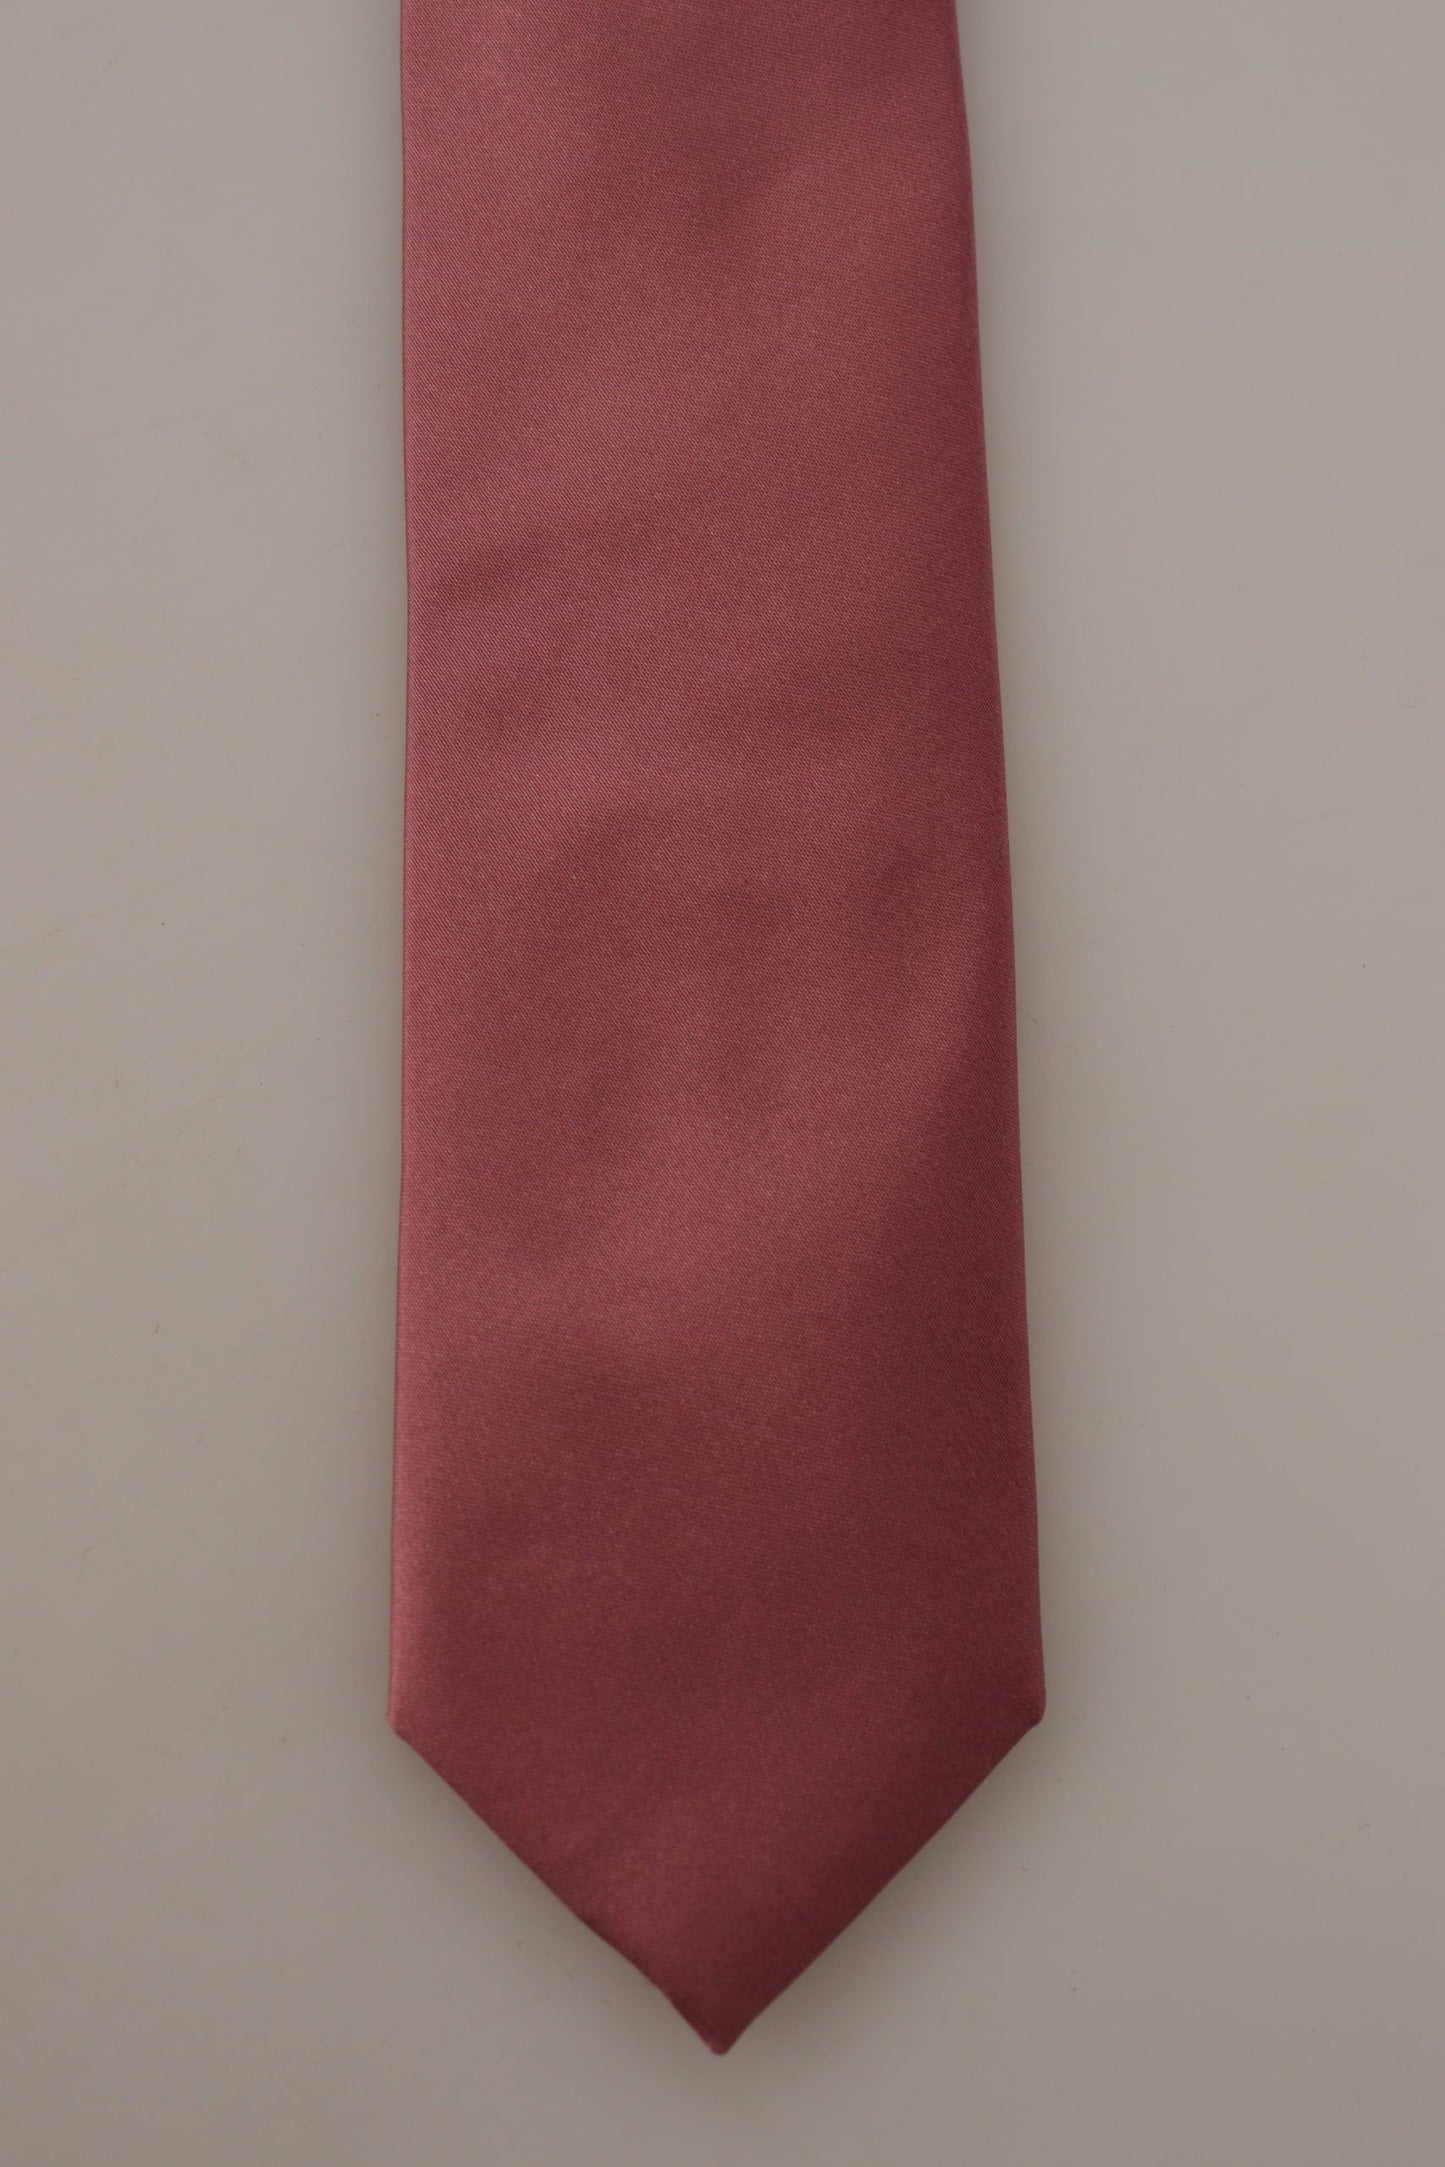 Cravatta per cravatta per cravatta regolabile in seta in seta in seta in seta in seta Dolce & Gabbana